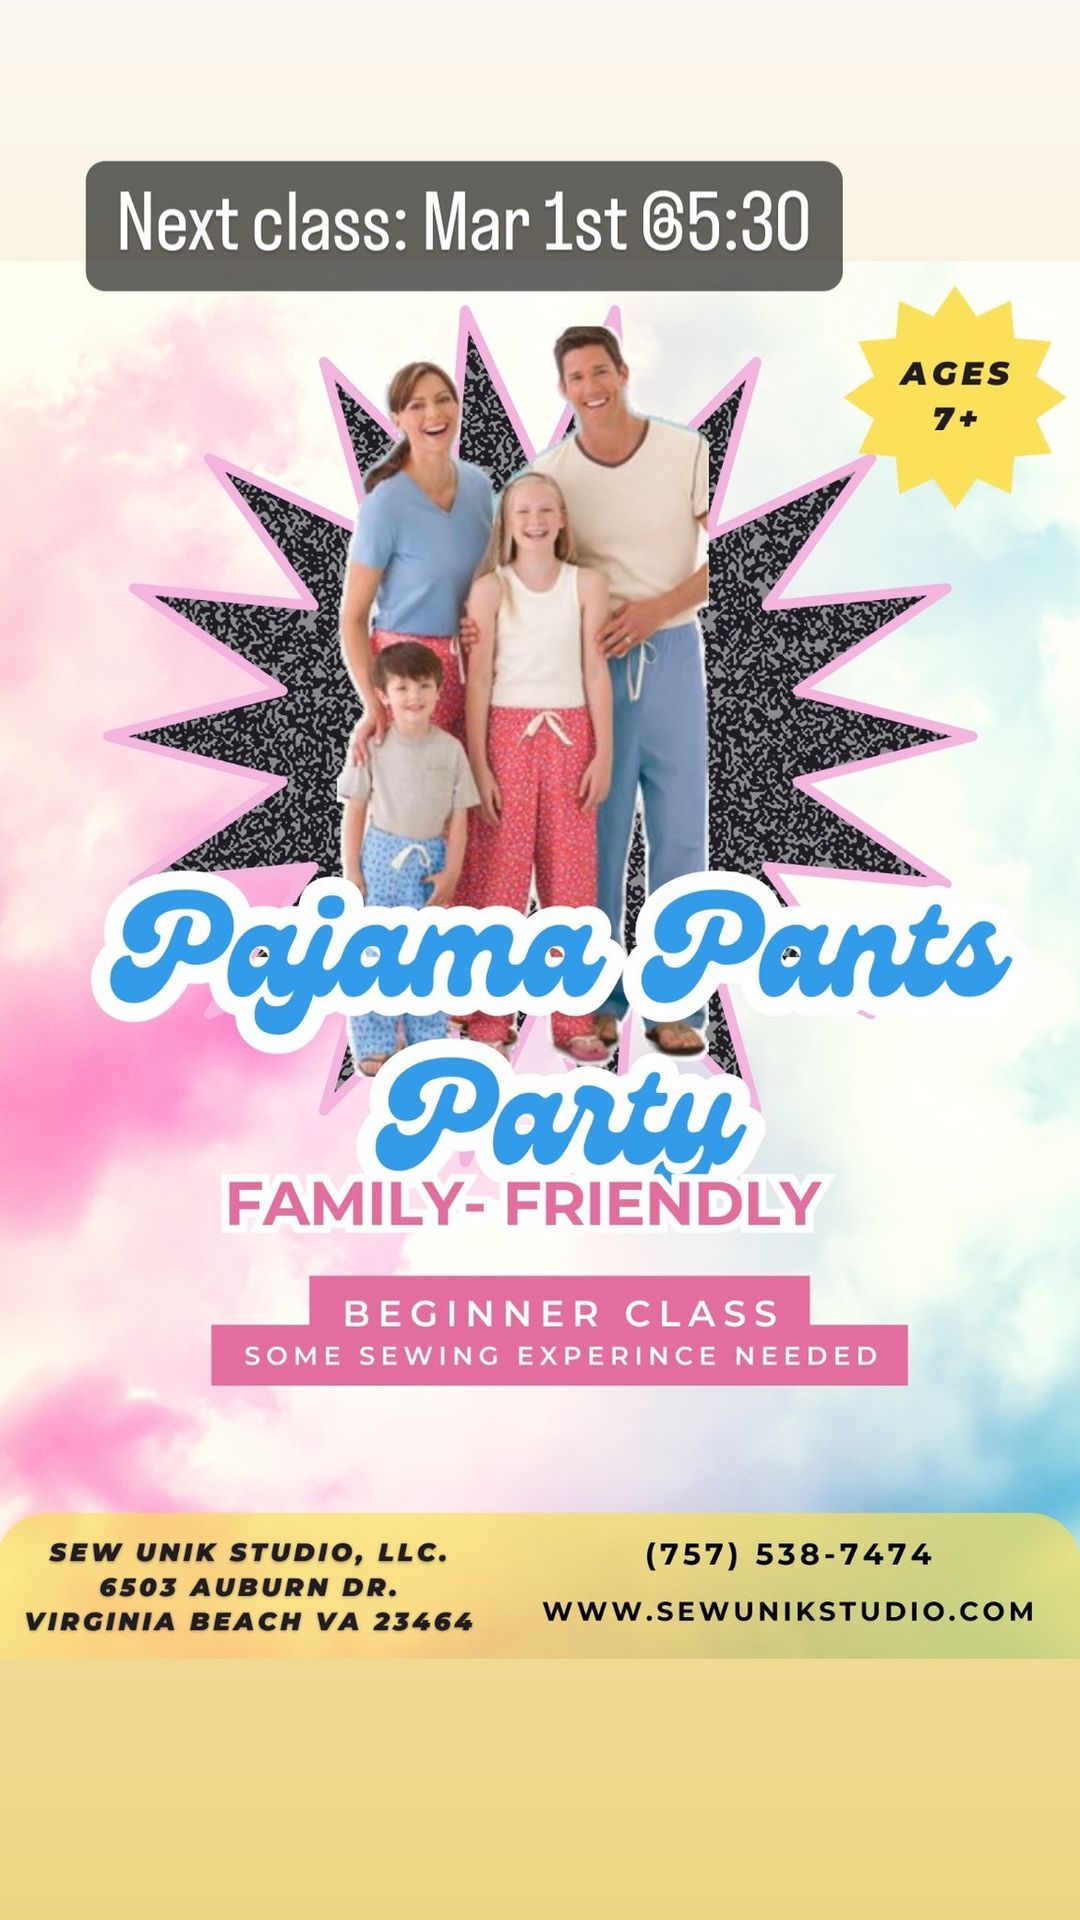 Pajama Pants Sewing Party